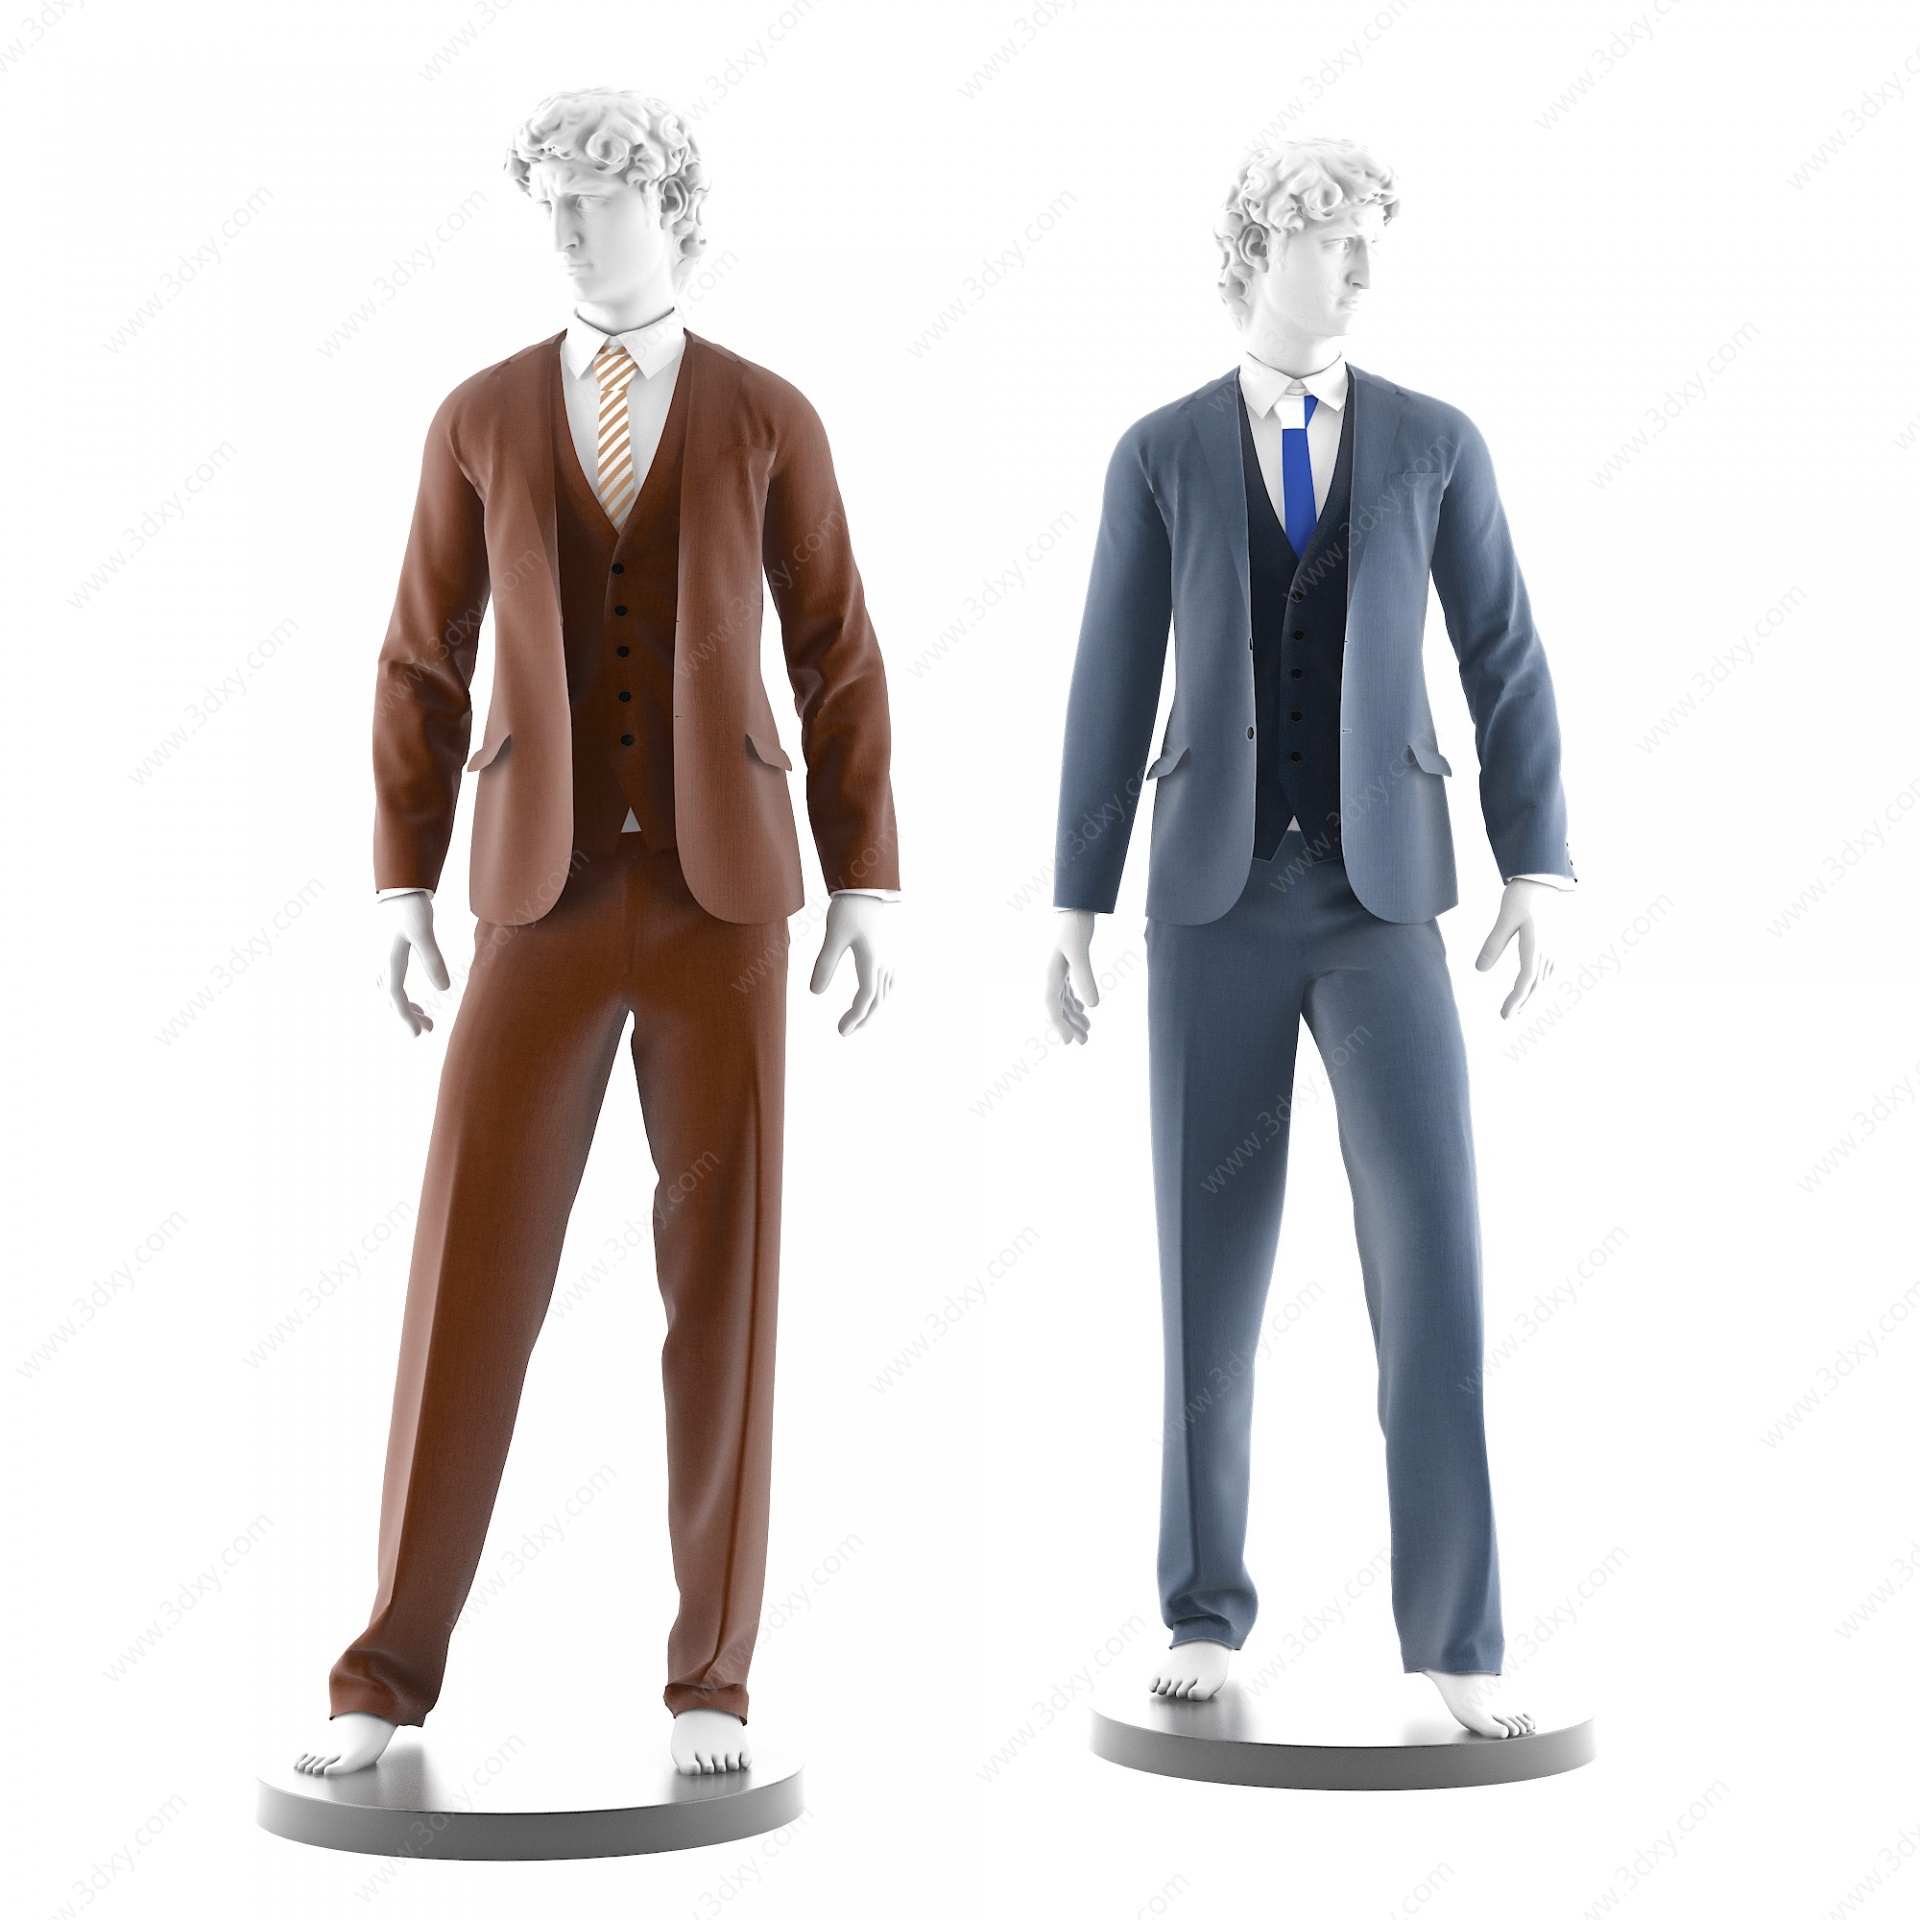 大卫西装男装服装模特3D模型